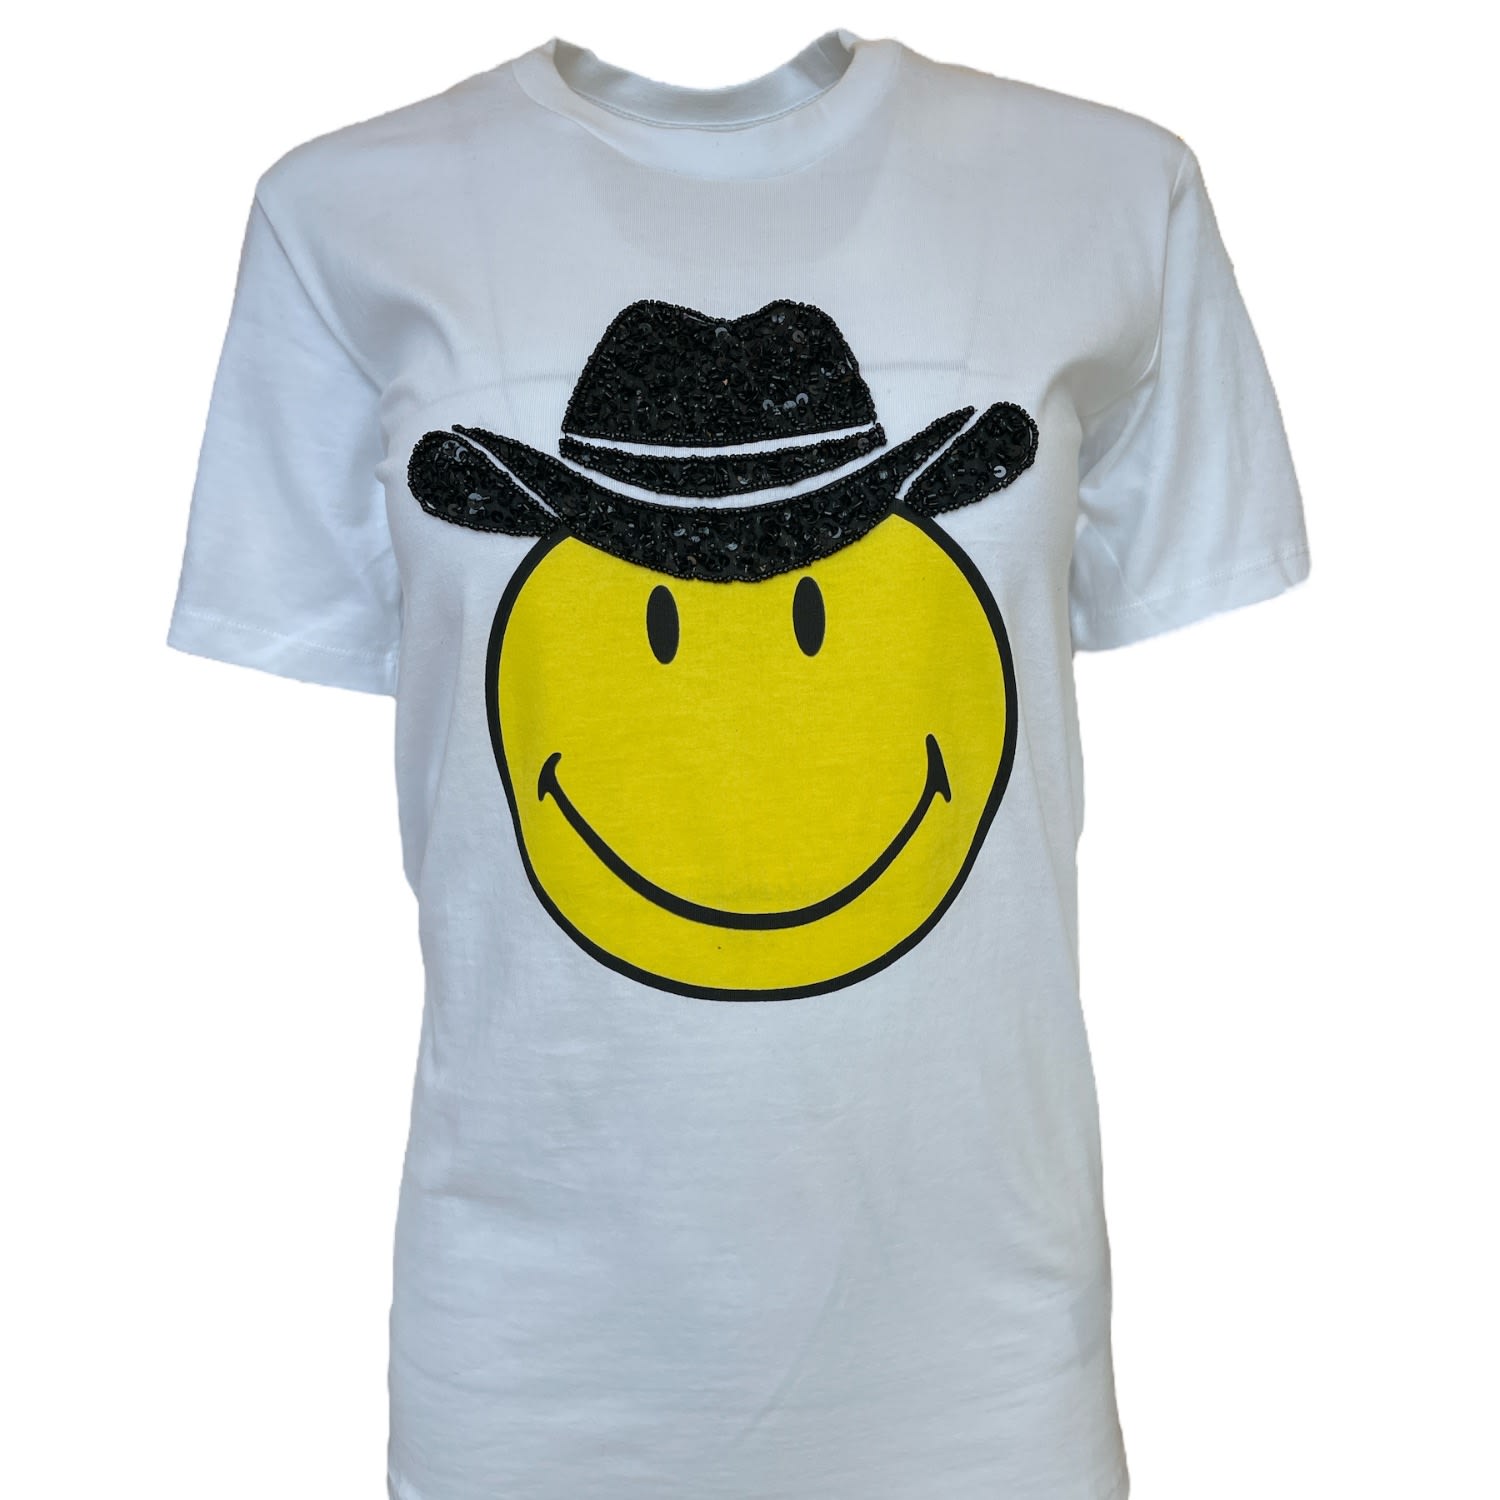 Women’s White / Black / Yellow Any Old Iron X Smiley Cowboy White T-Shirt Xxl